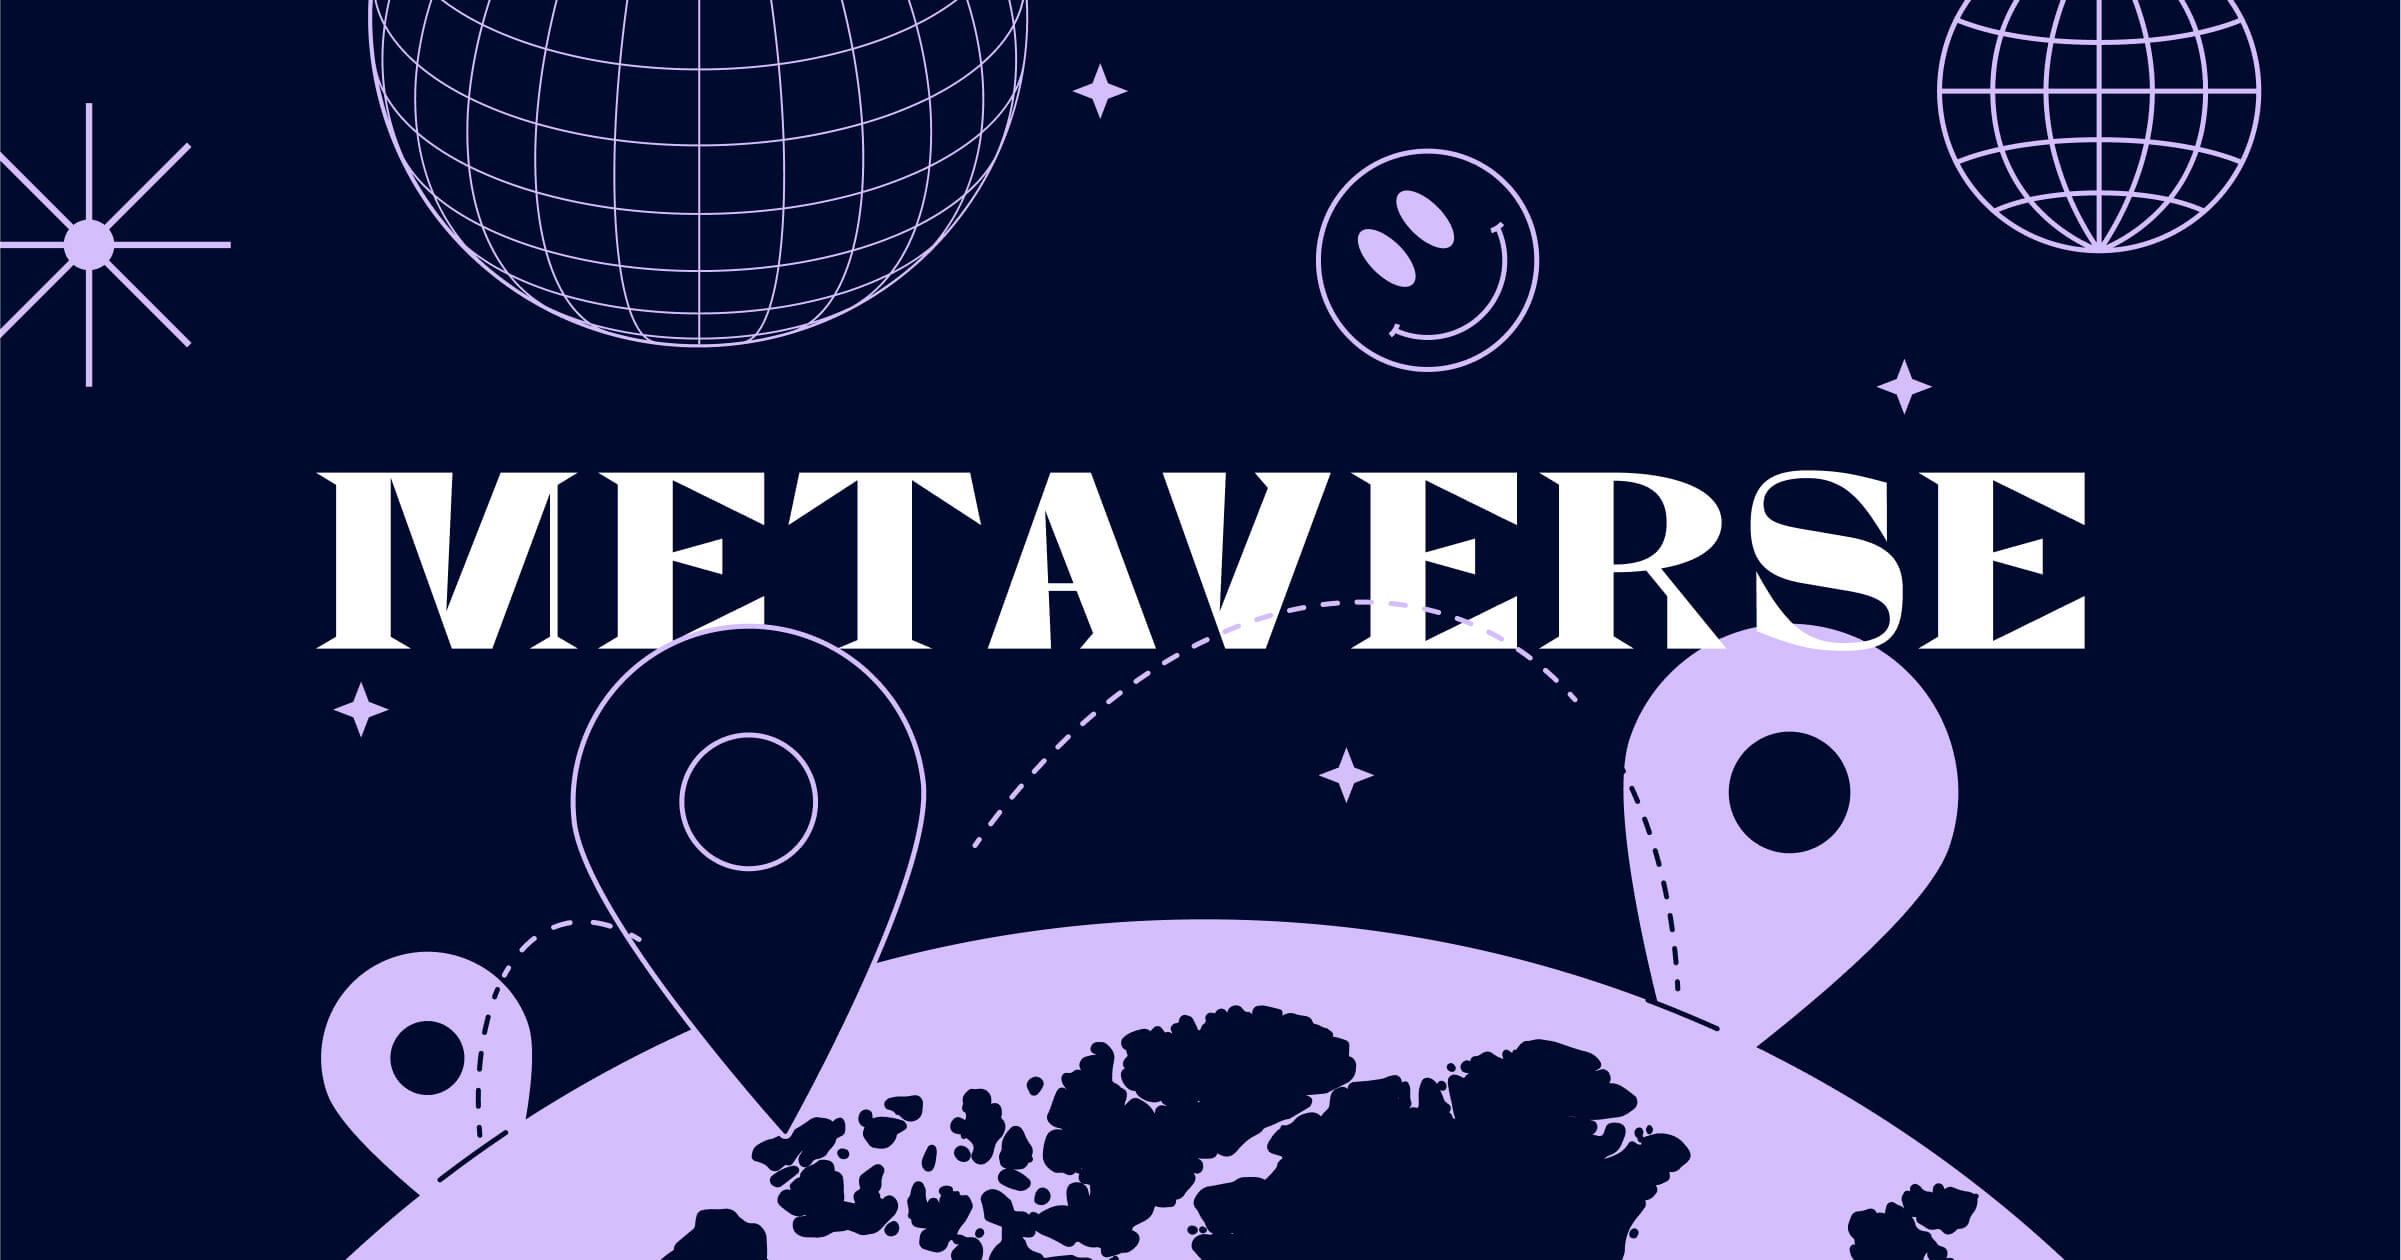 这幅图片展示了深紫色背景上的“METAVERSE”字样，周围有地球、位置标记和星球等符号，传达了虚拟宇宙的概念。